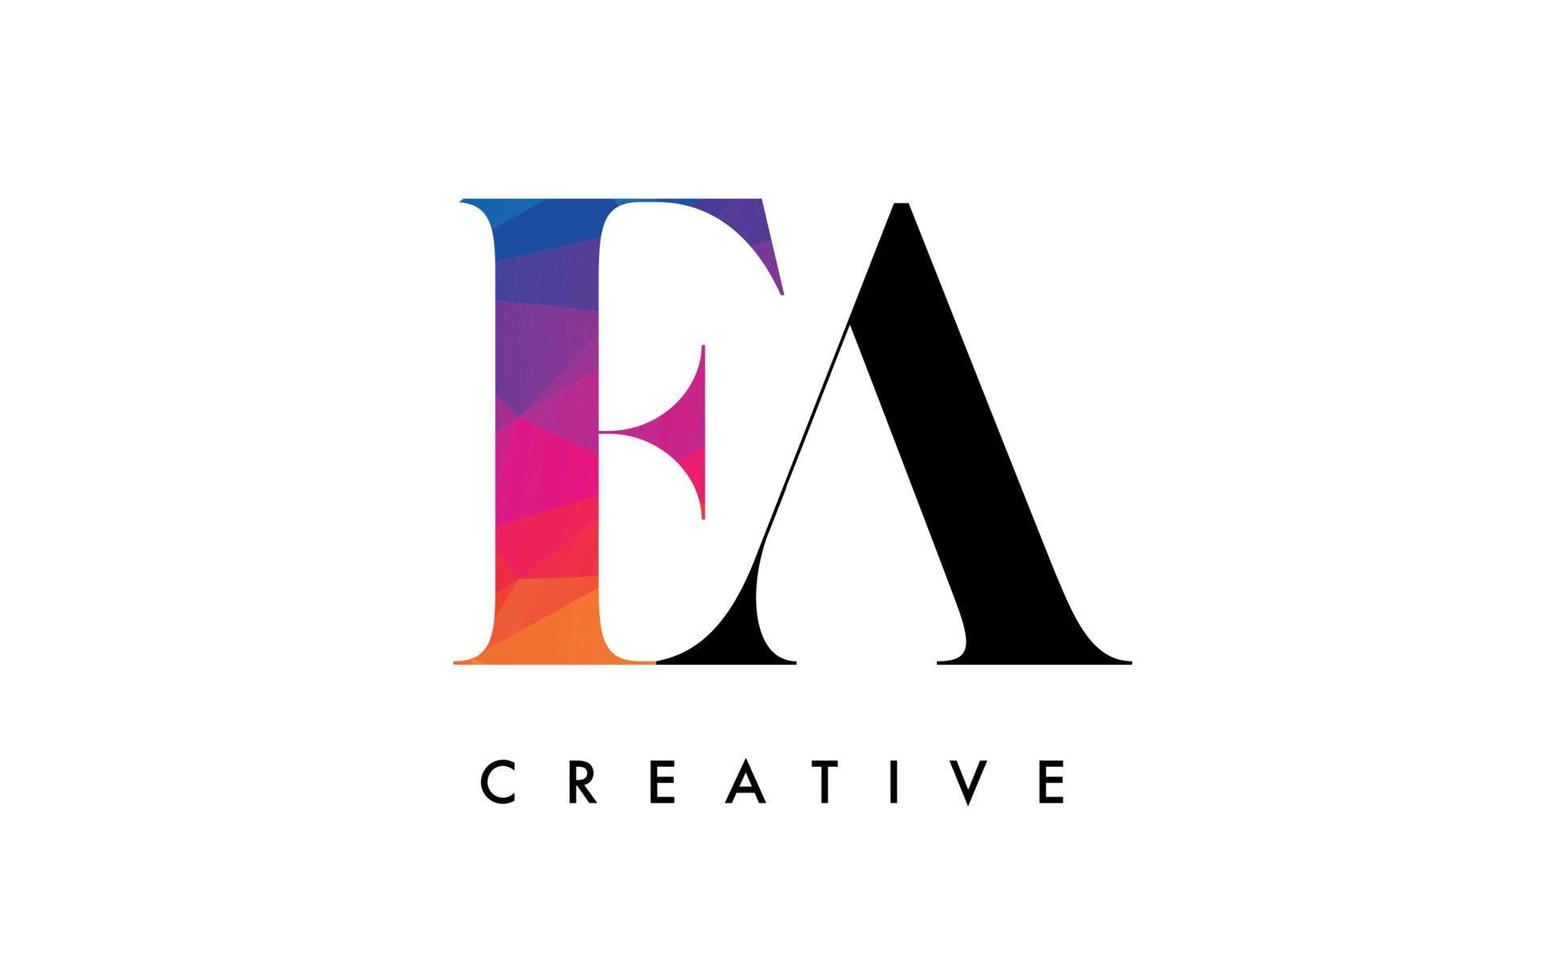 conception de lettre ea avec coupe créative et texture arc-en-ciel colorée vecteur